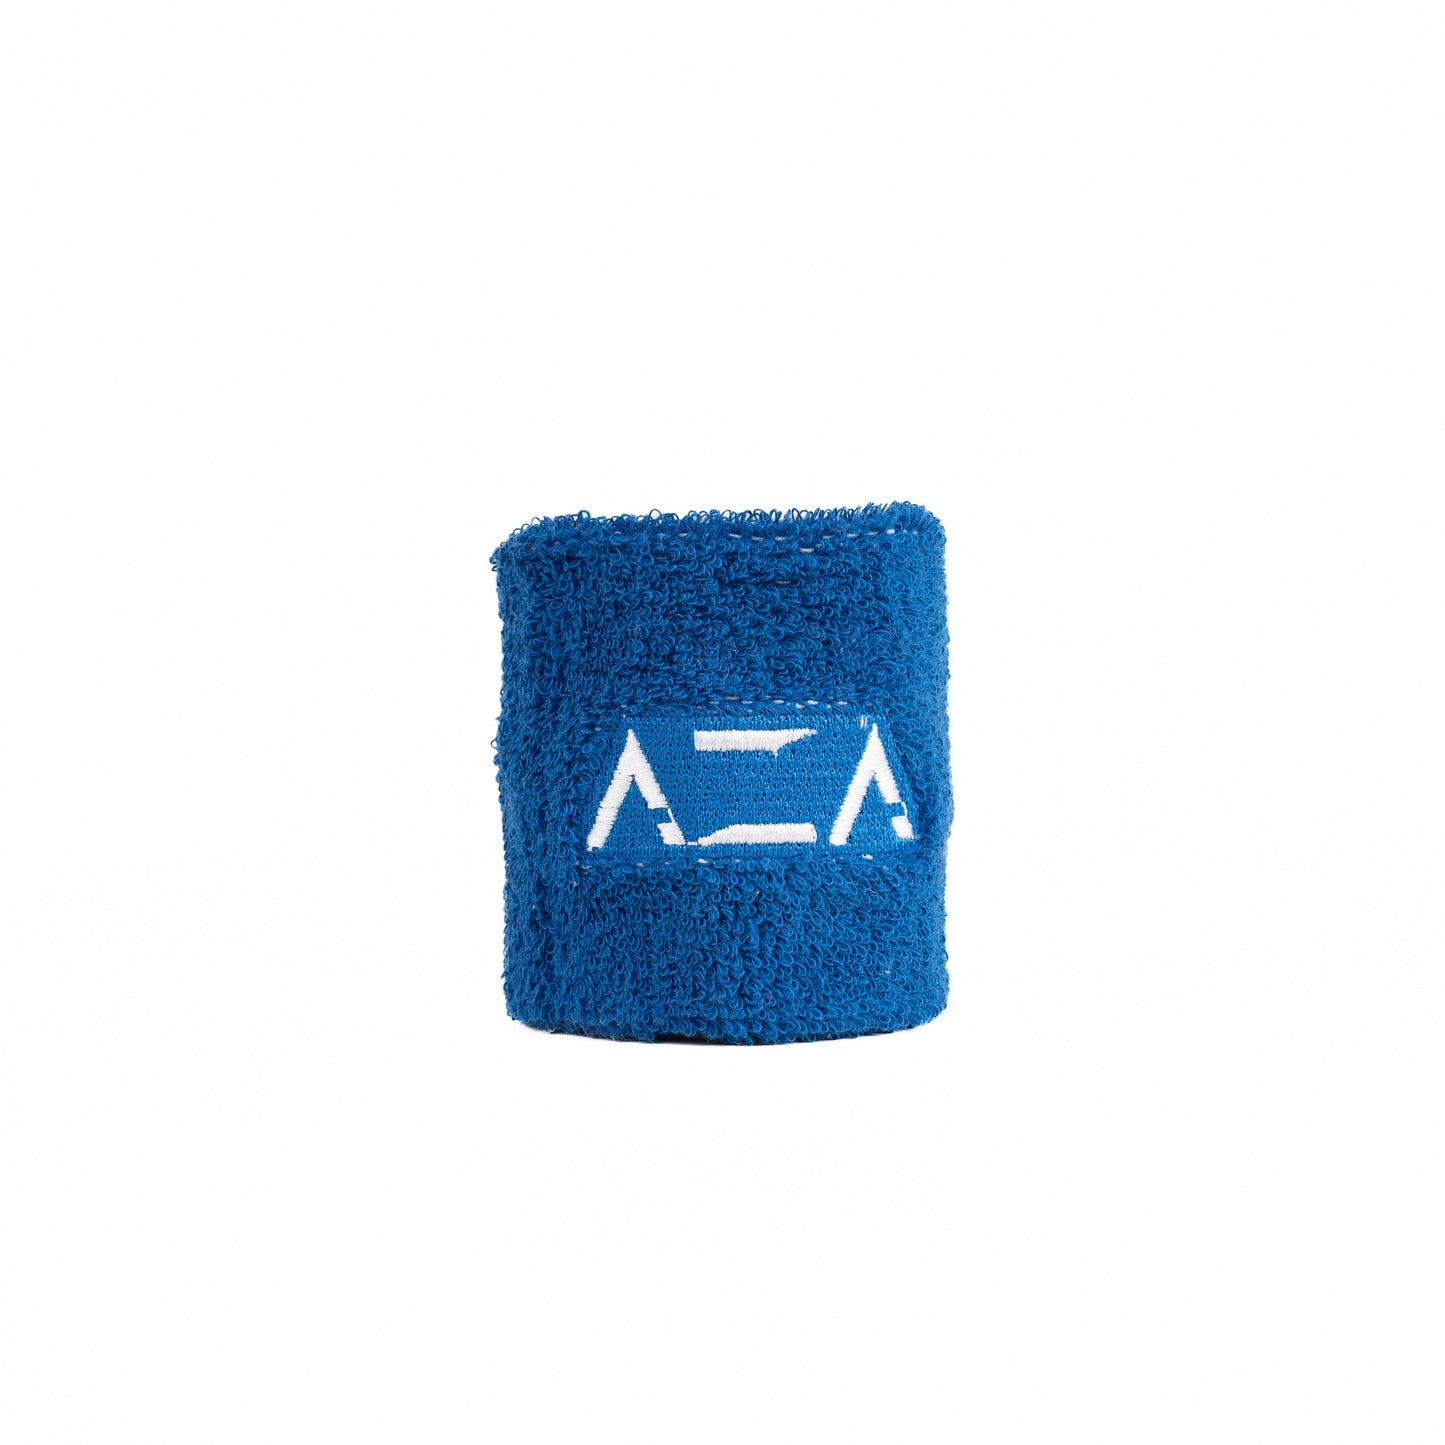 AZA Wristband Basic - Blue